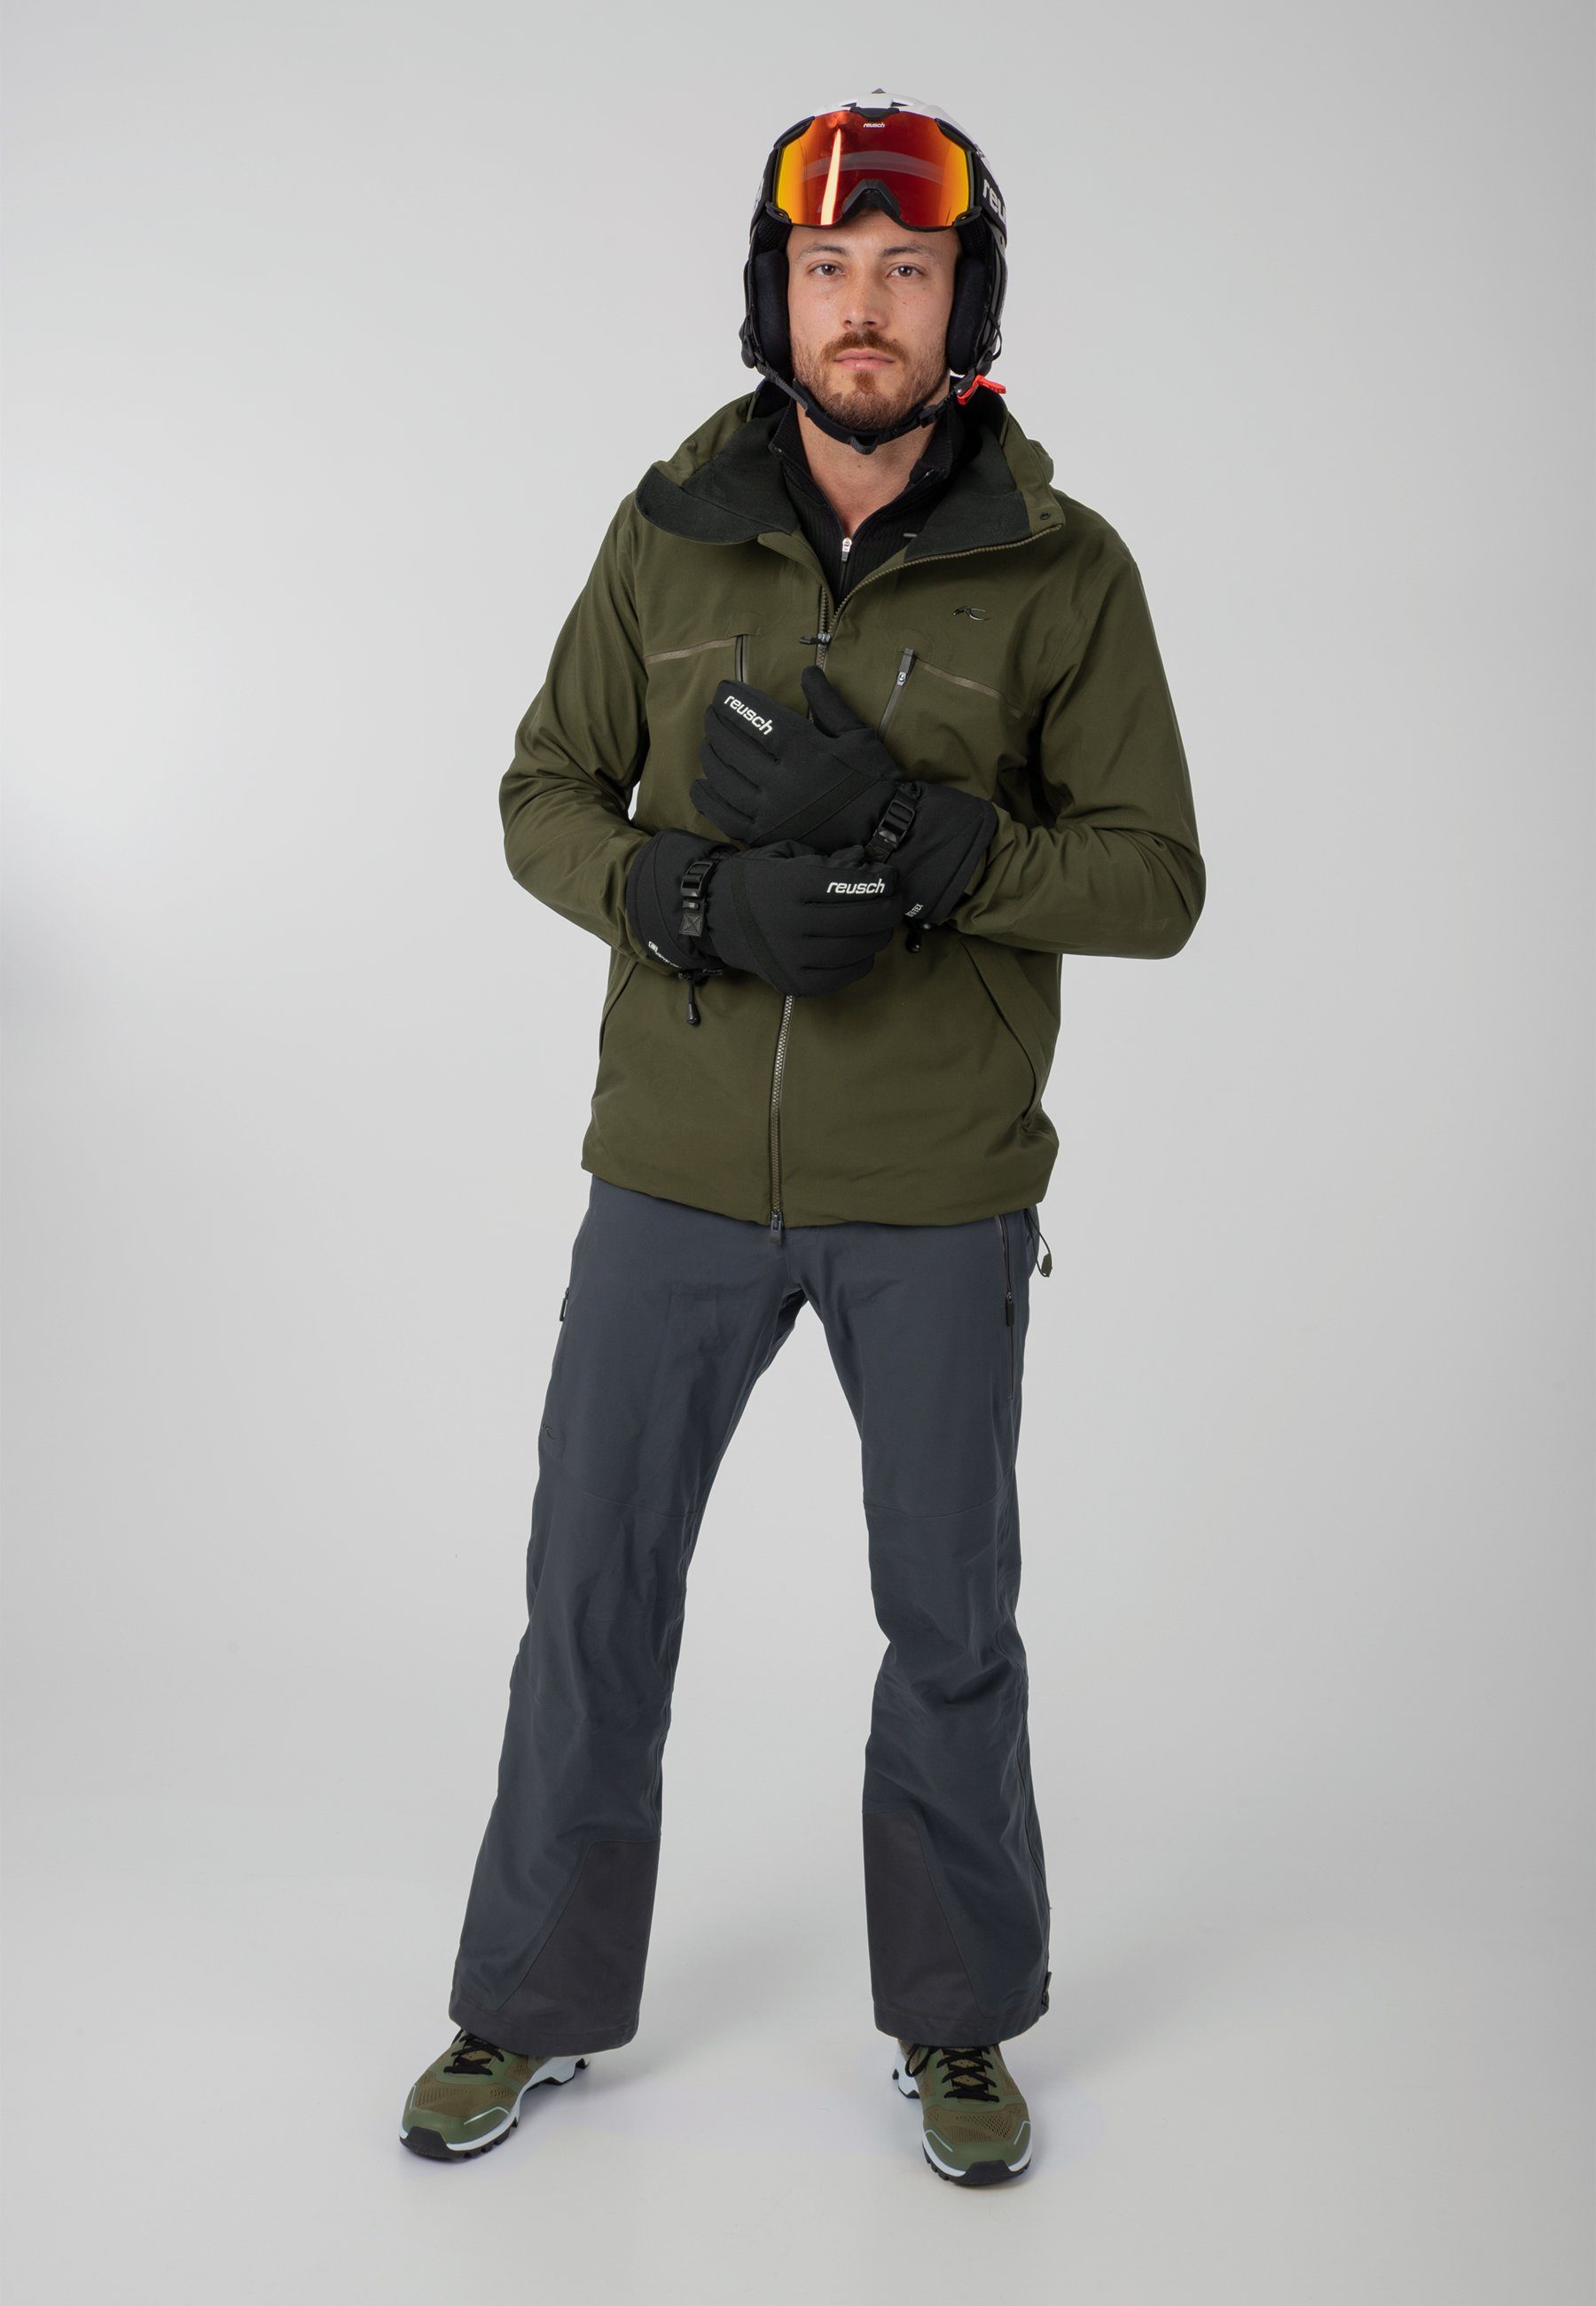 Glove wasserdichtem atmungsaktivem Warm Skihandschuhe GORE-TEX Material Winter Reusch und aus